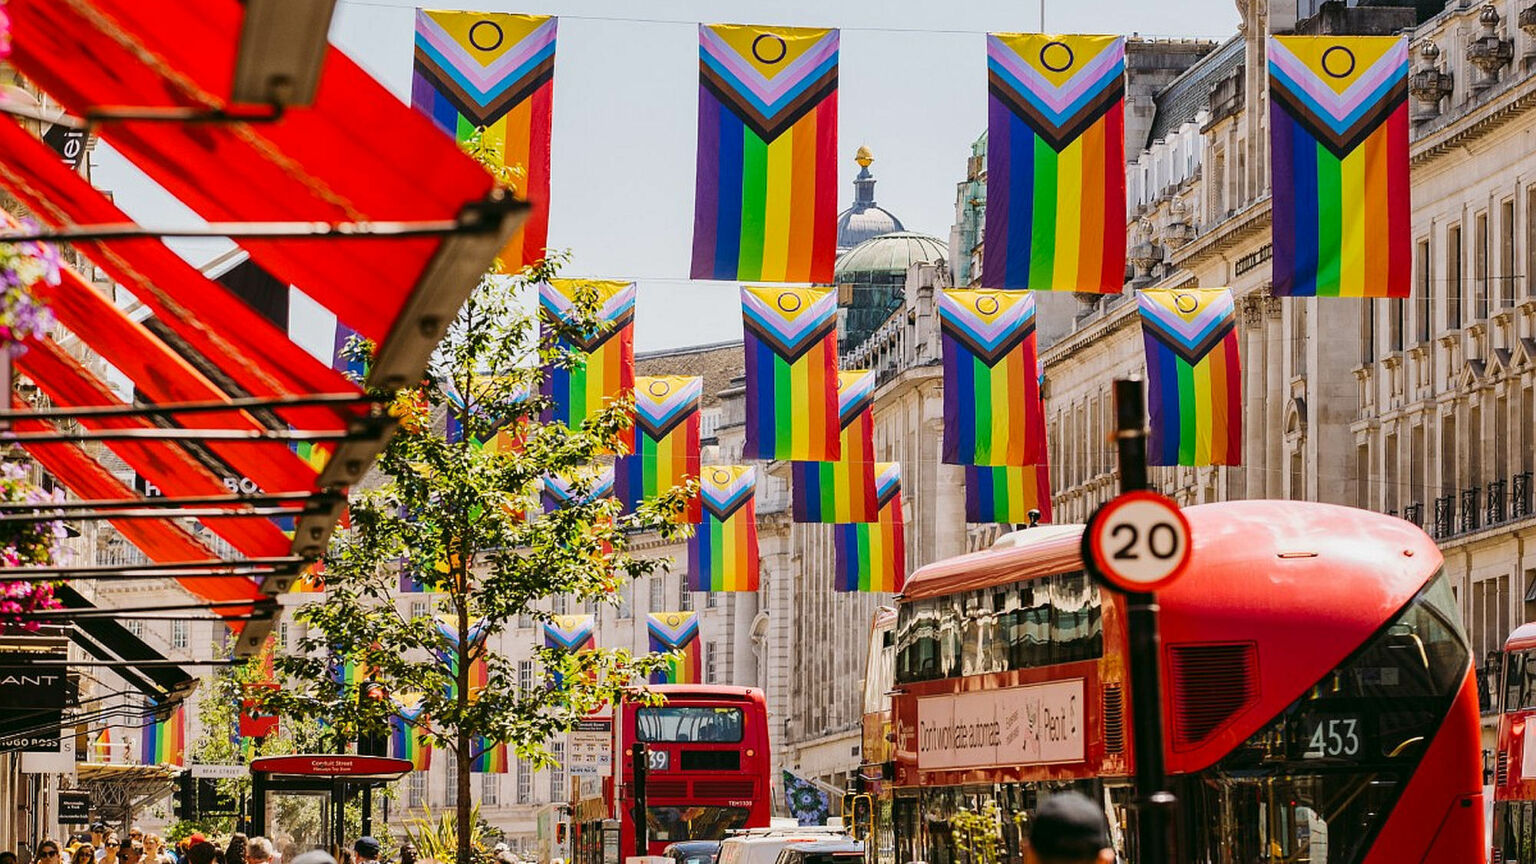 pride-flags-london-street-1536x864.jpg